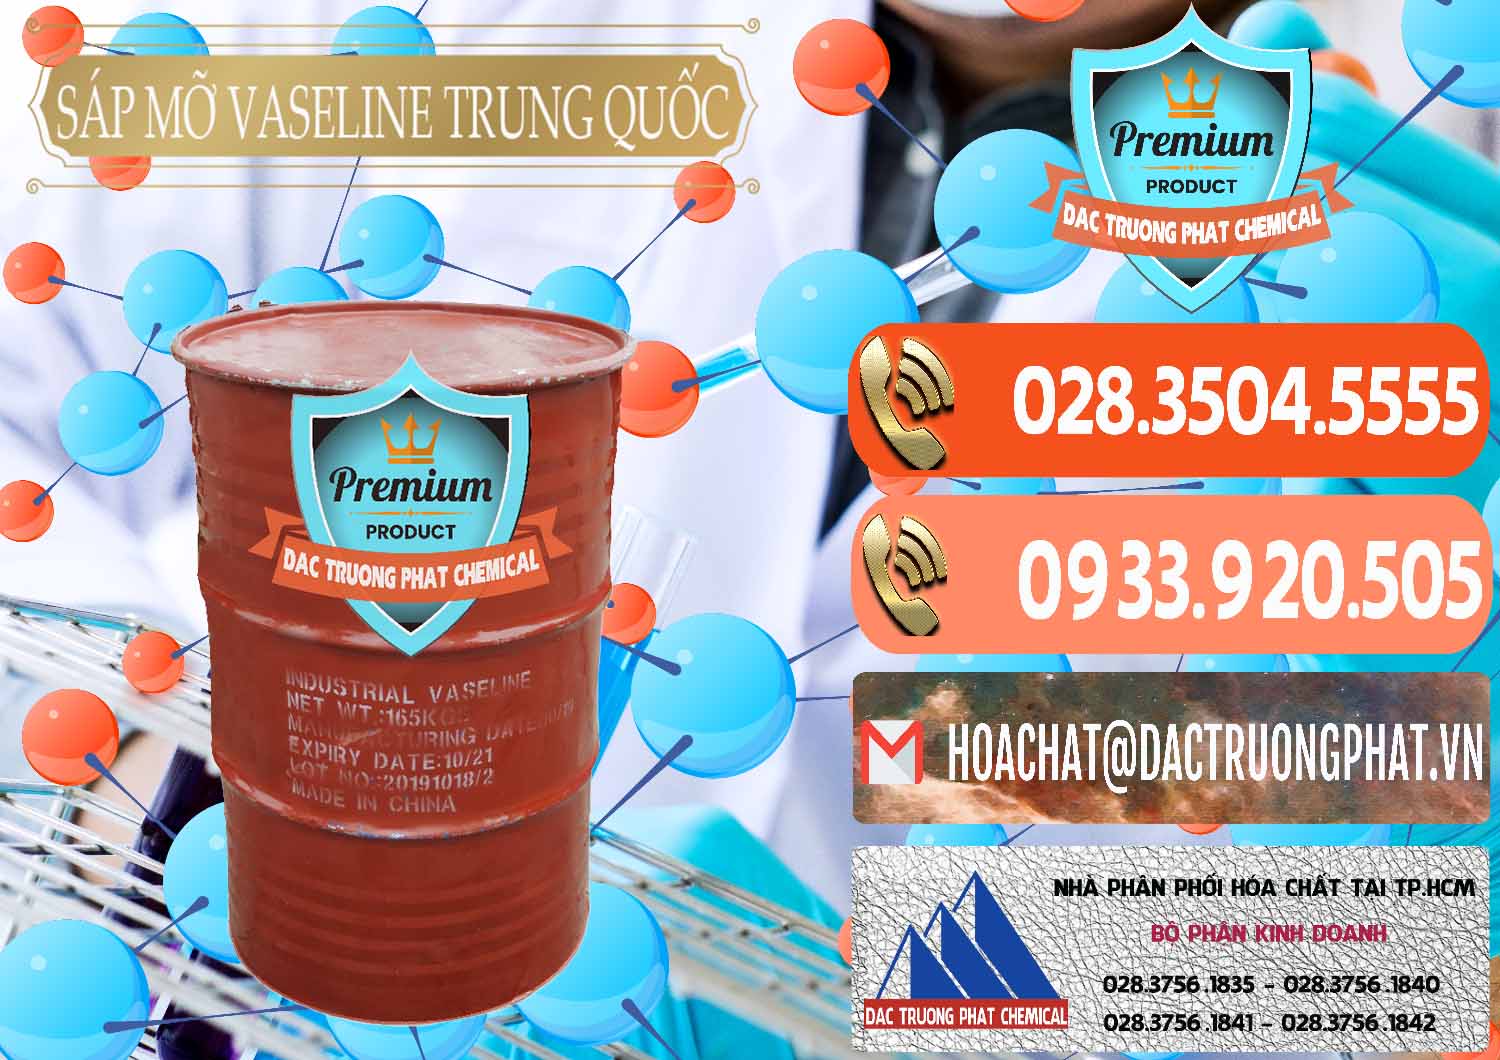 Cty chuyên cung ứng & bán Sáp Mỡ Vaseline Trung Quốc China - 0122 - Nơi chuyên kinh doanh - phân phối hóa chất tại TP.HCM - hoachatmientay.com